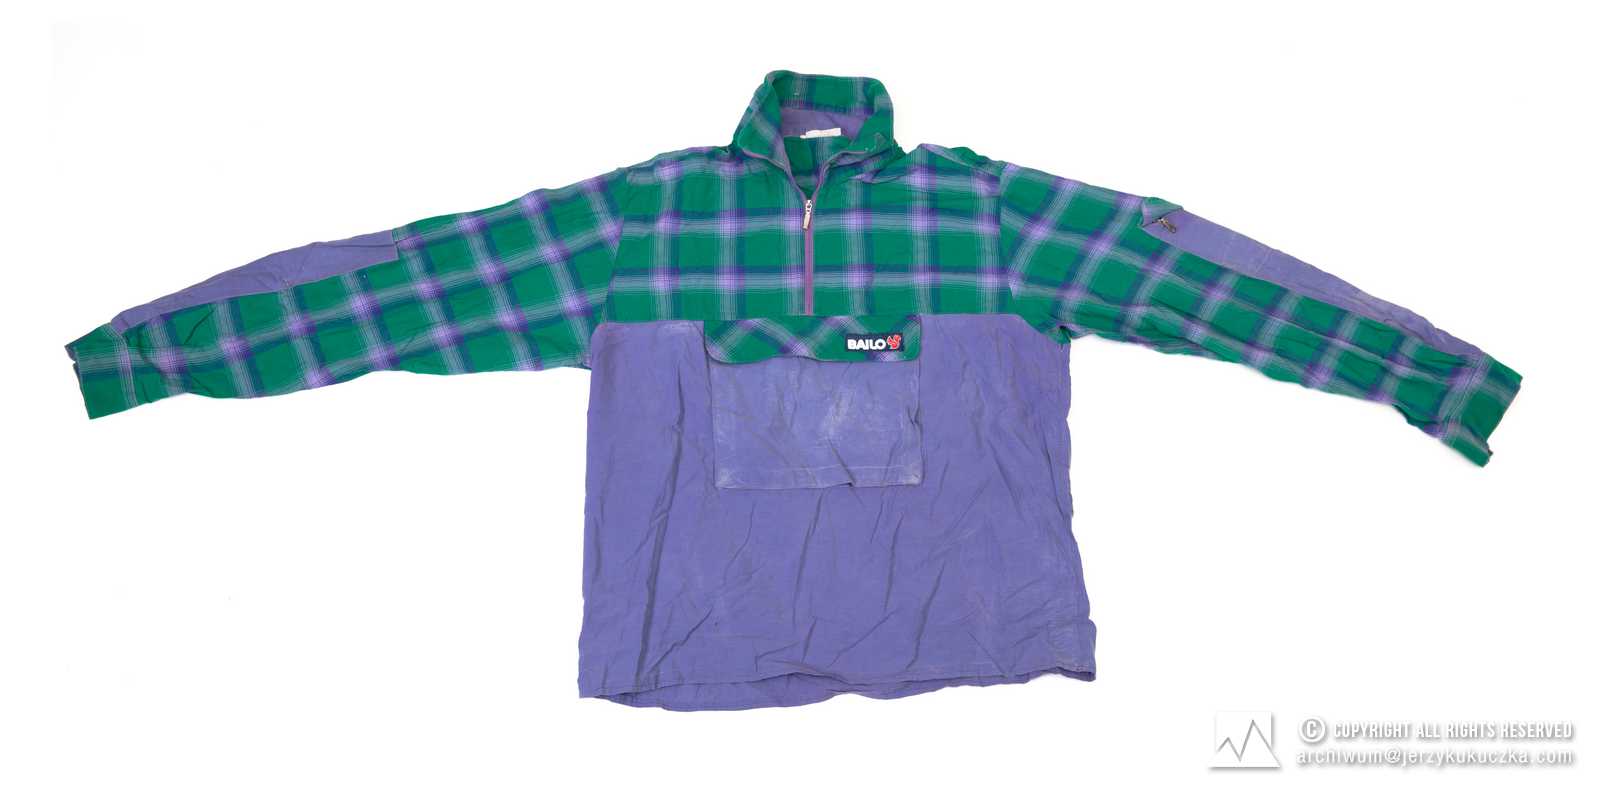 Koszula firmy Bailo. Fioletowa z zielono-fioletową kratą, z długim rękawem. Lata 70-80 XX w.